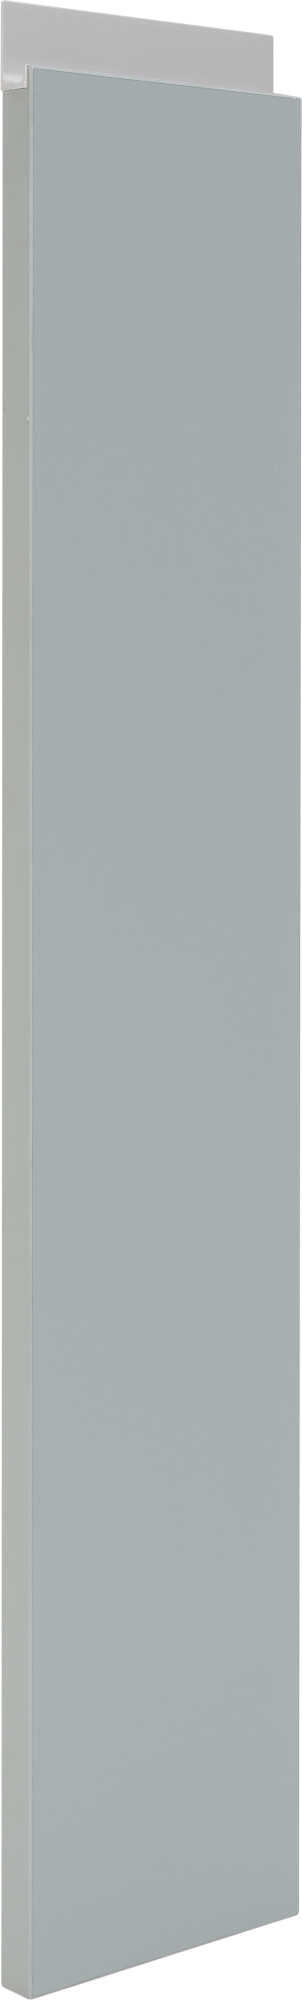 Puerta para mueble de cocina mikonos aguamarina brillo 76,8x15 cm